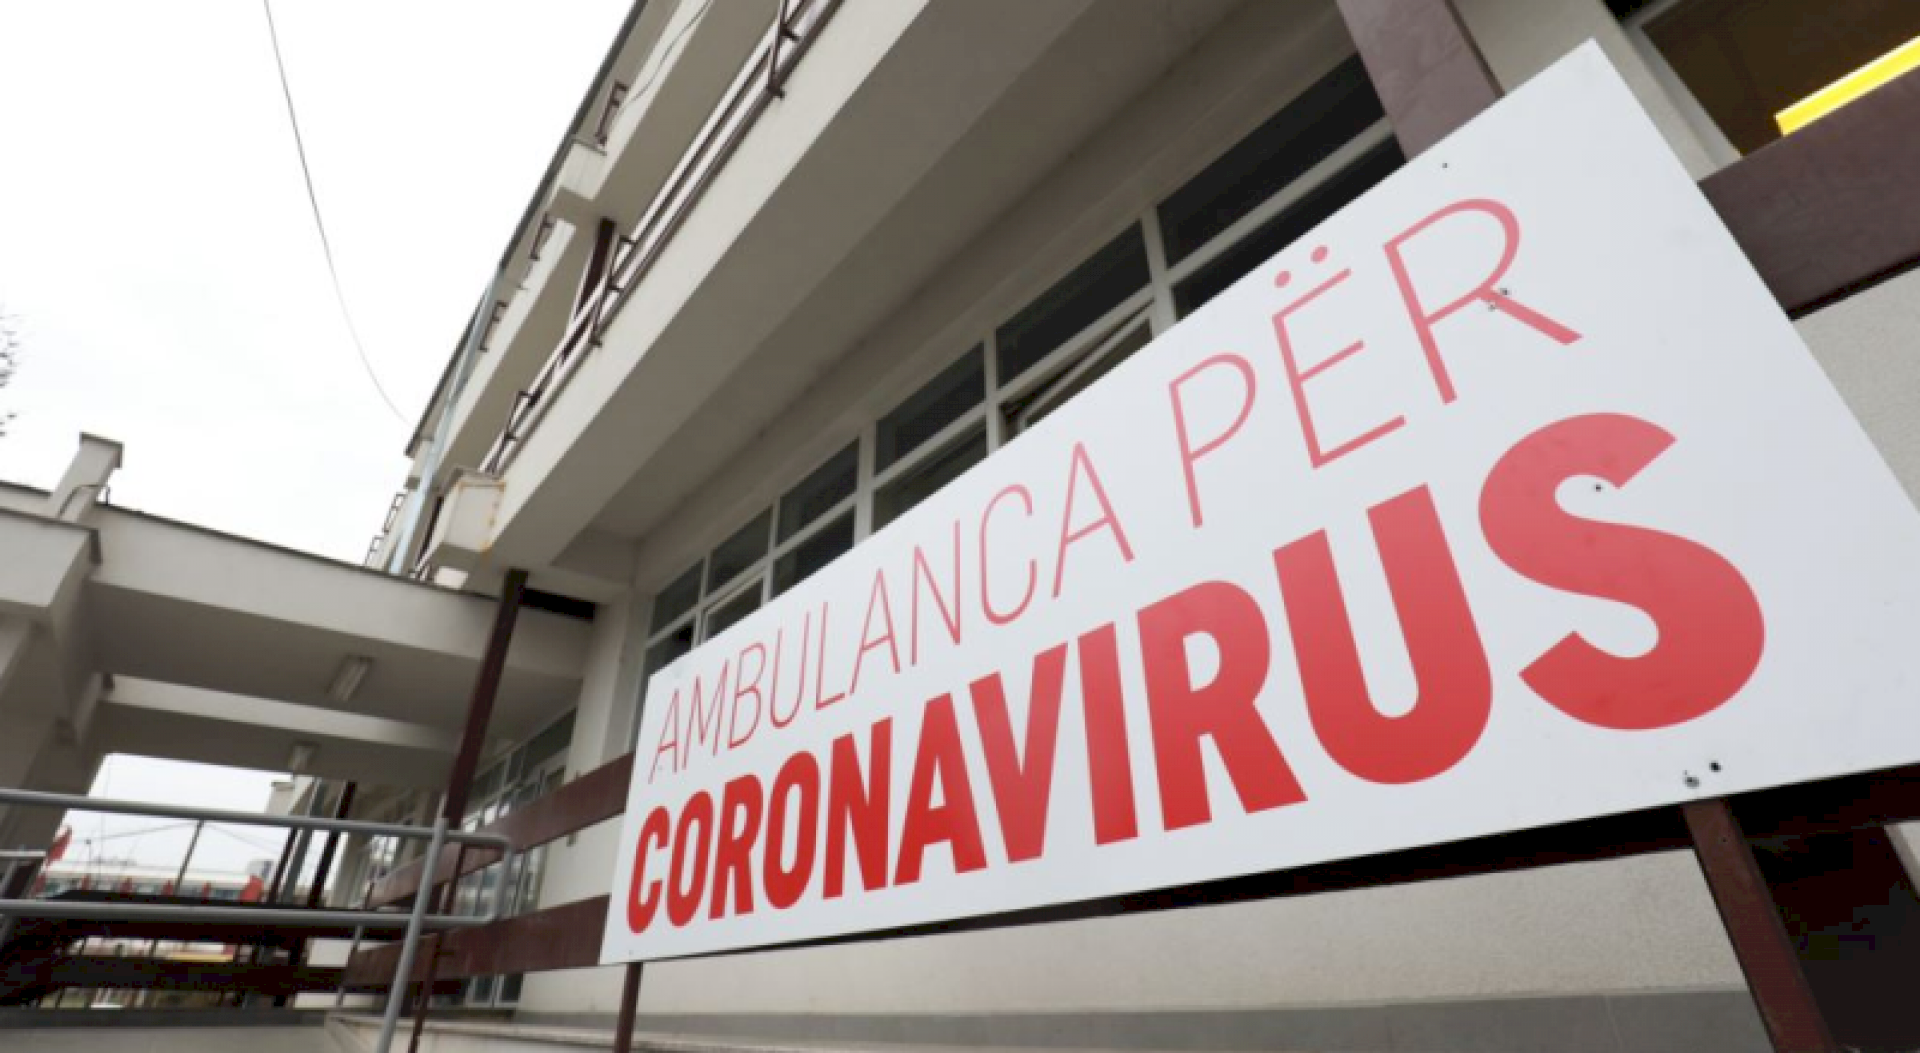 Humb jetën një person nga coronavirusi në Kosovë, konfirmohen 20 raste të reja